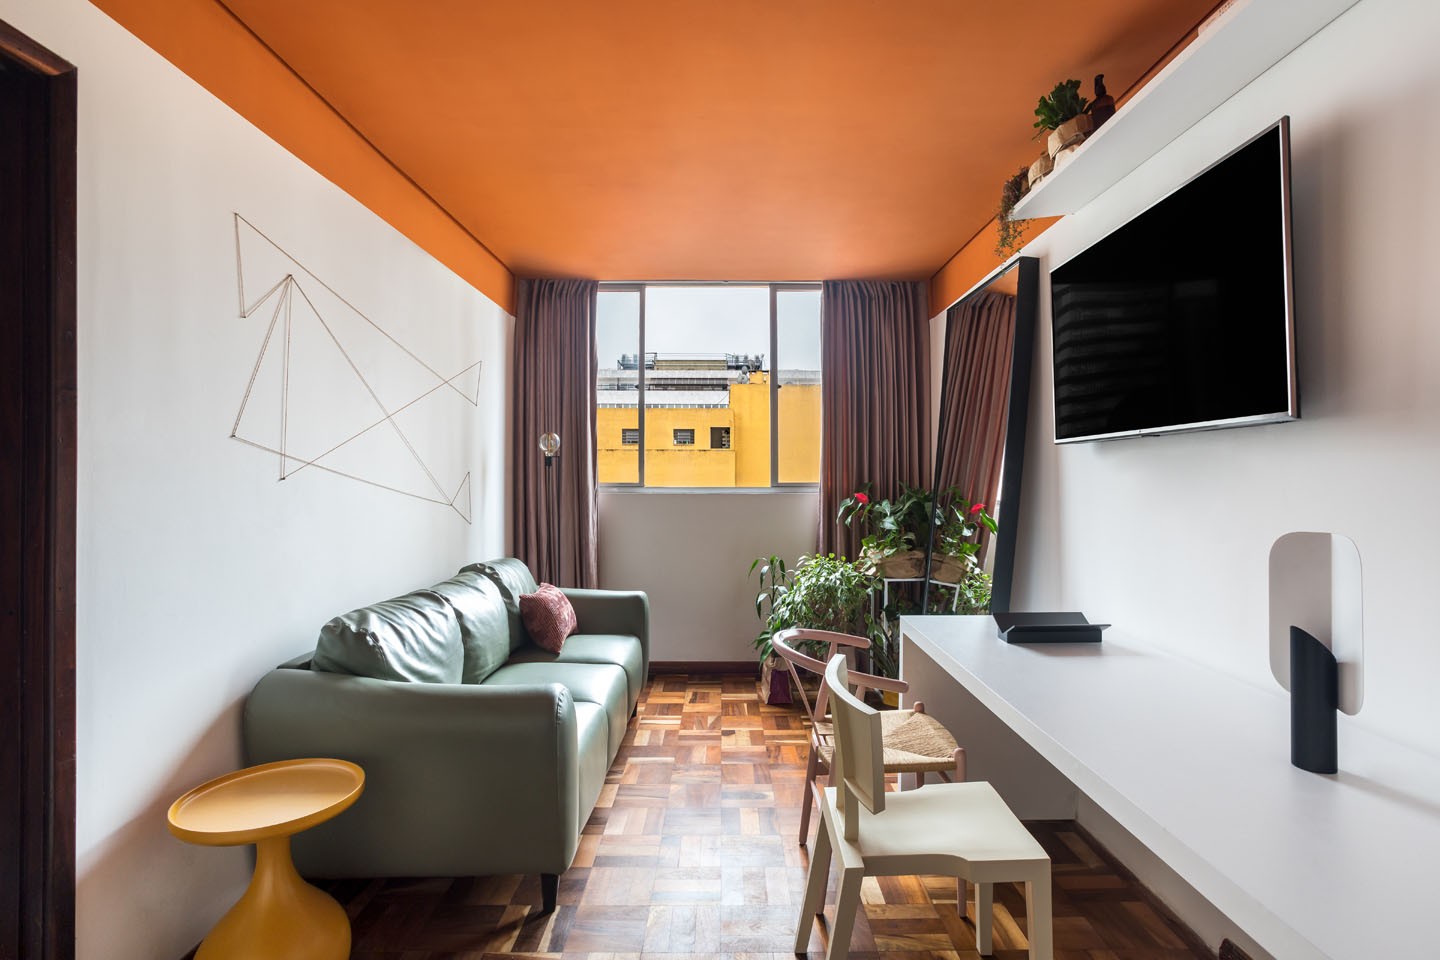 Décor do dia: sala de estar com teto colorido vira home office flexível (Foto: Eduardo Macarios)